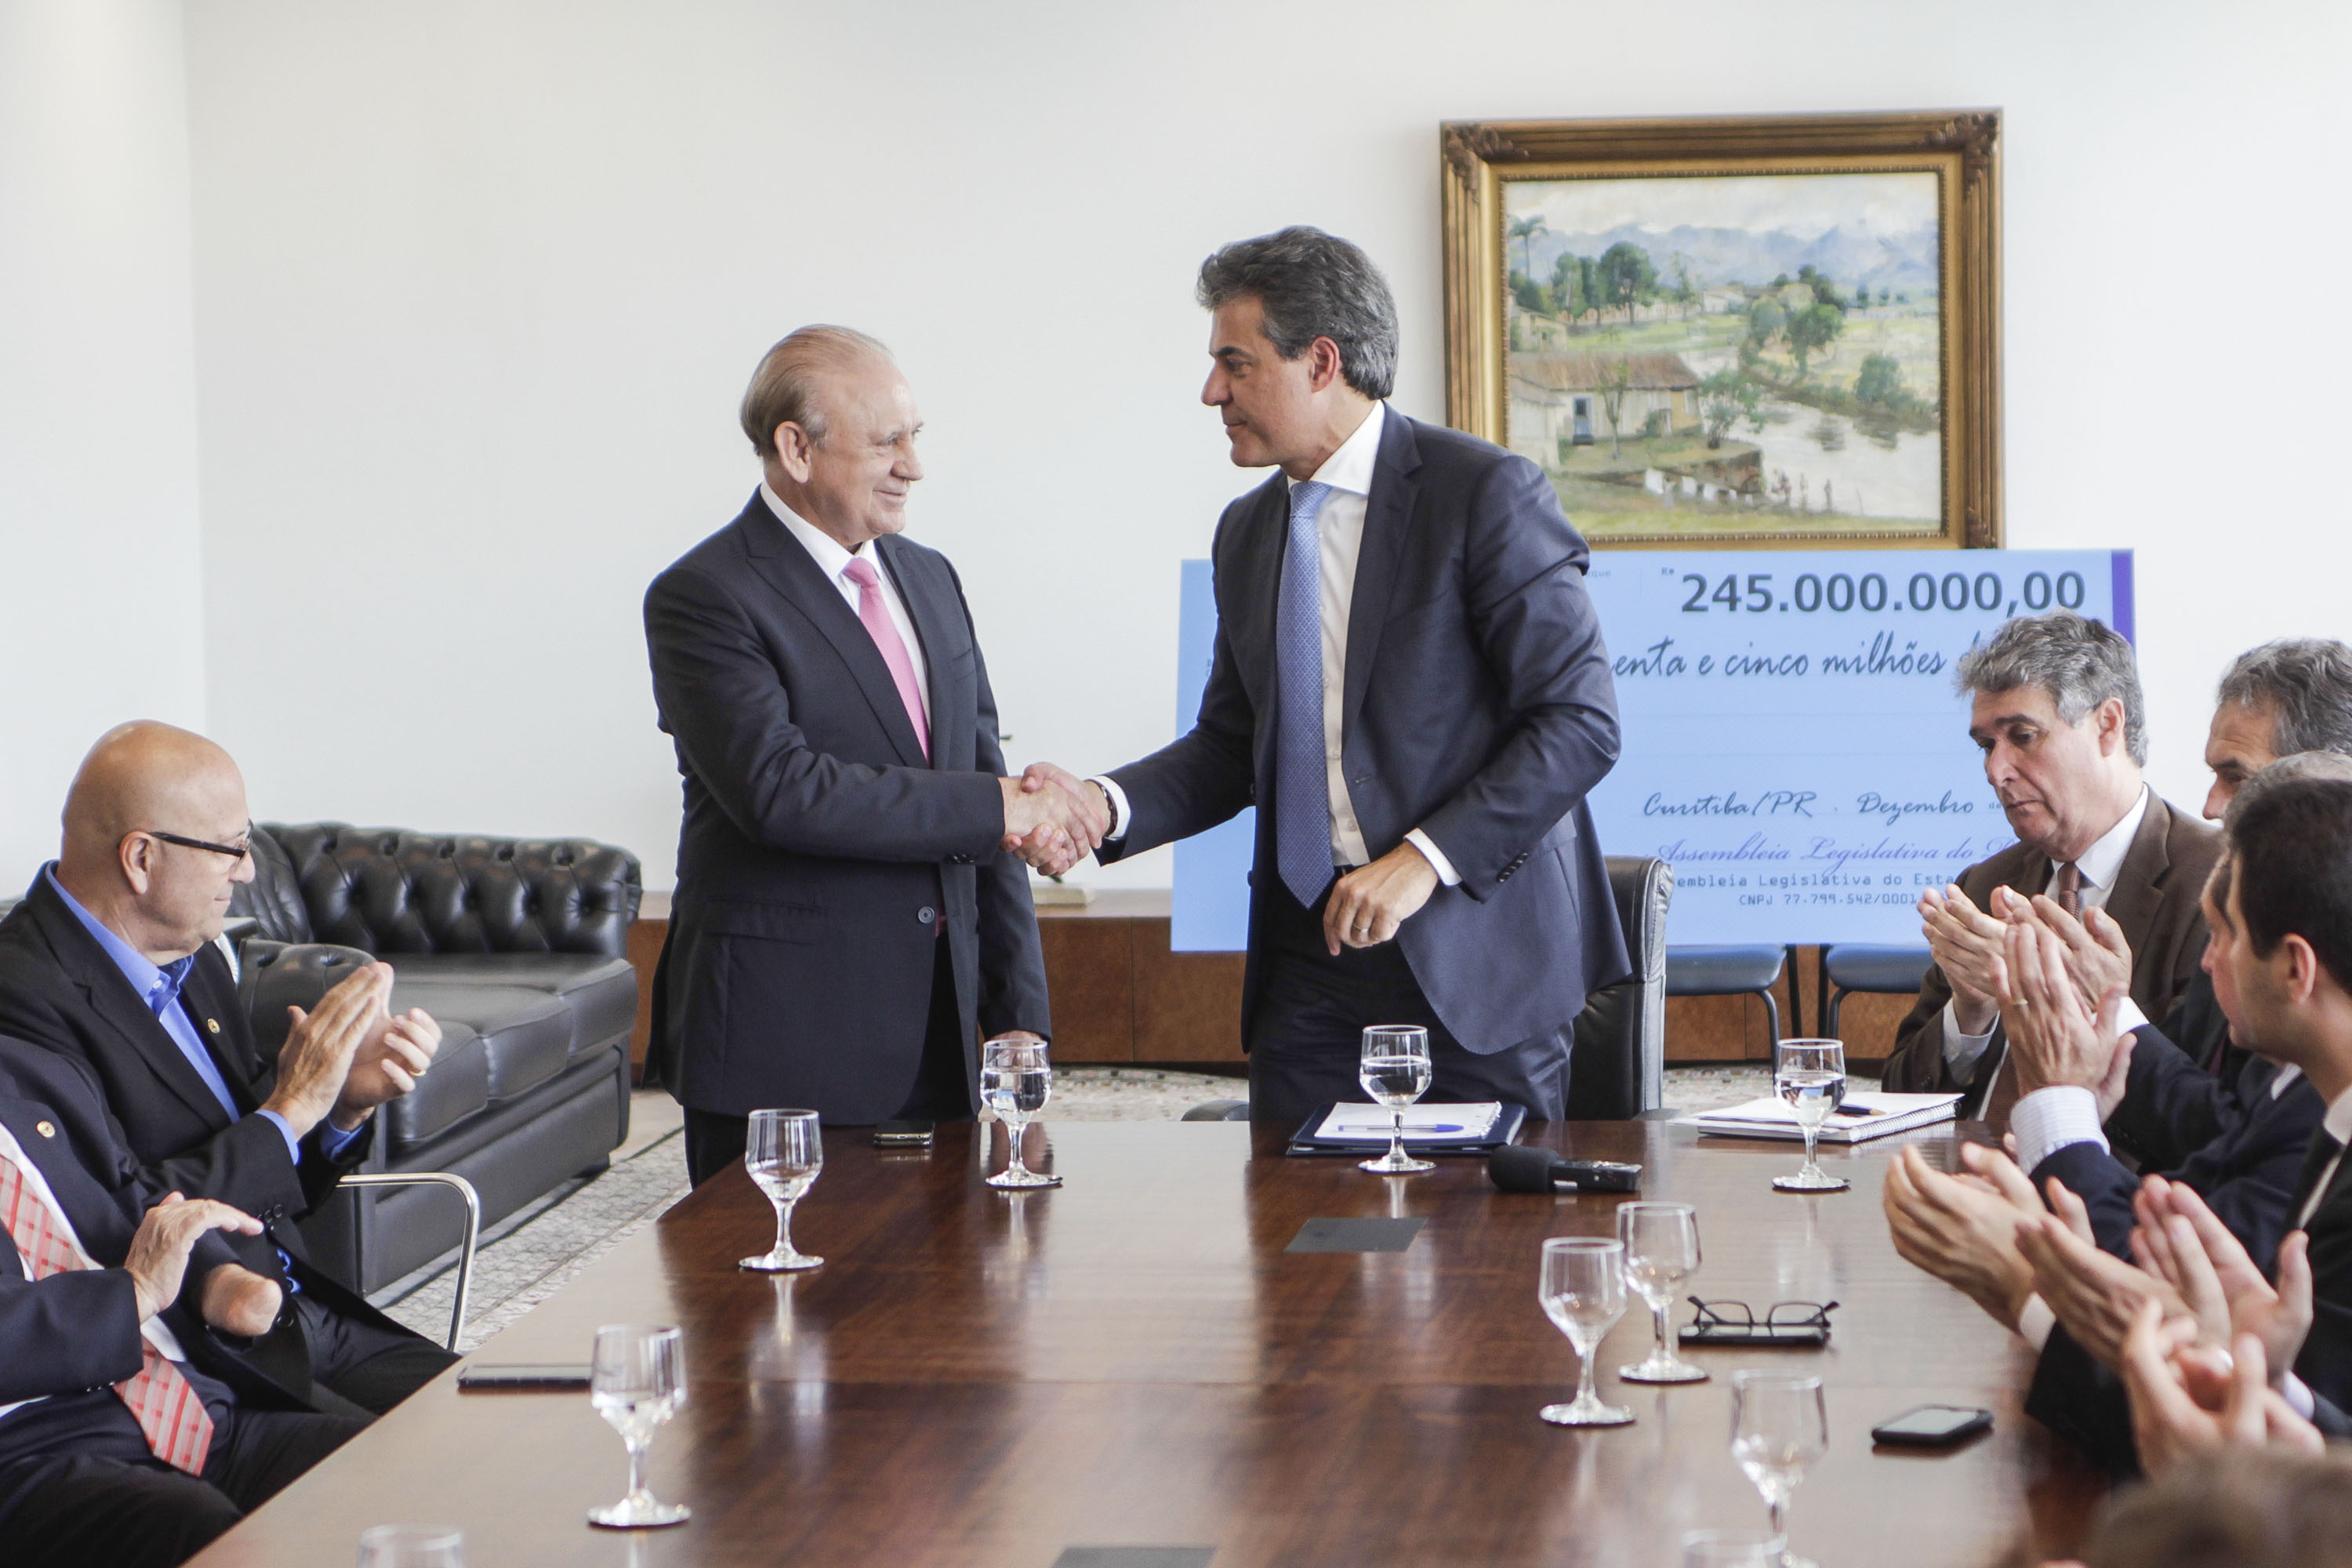 O cheque simbólico foi entregue ao governador Beto Richa pelo presidente da Assembleia Legislativa, deputado Ademar Traiano. Foto: Assessoria